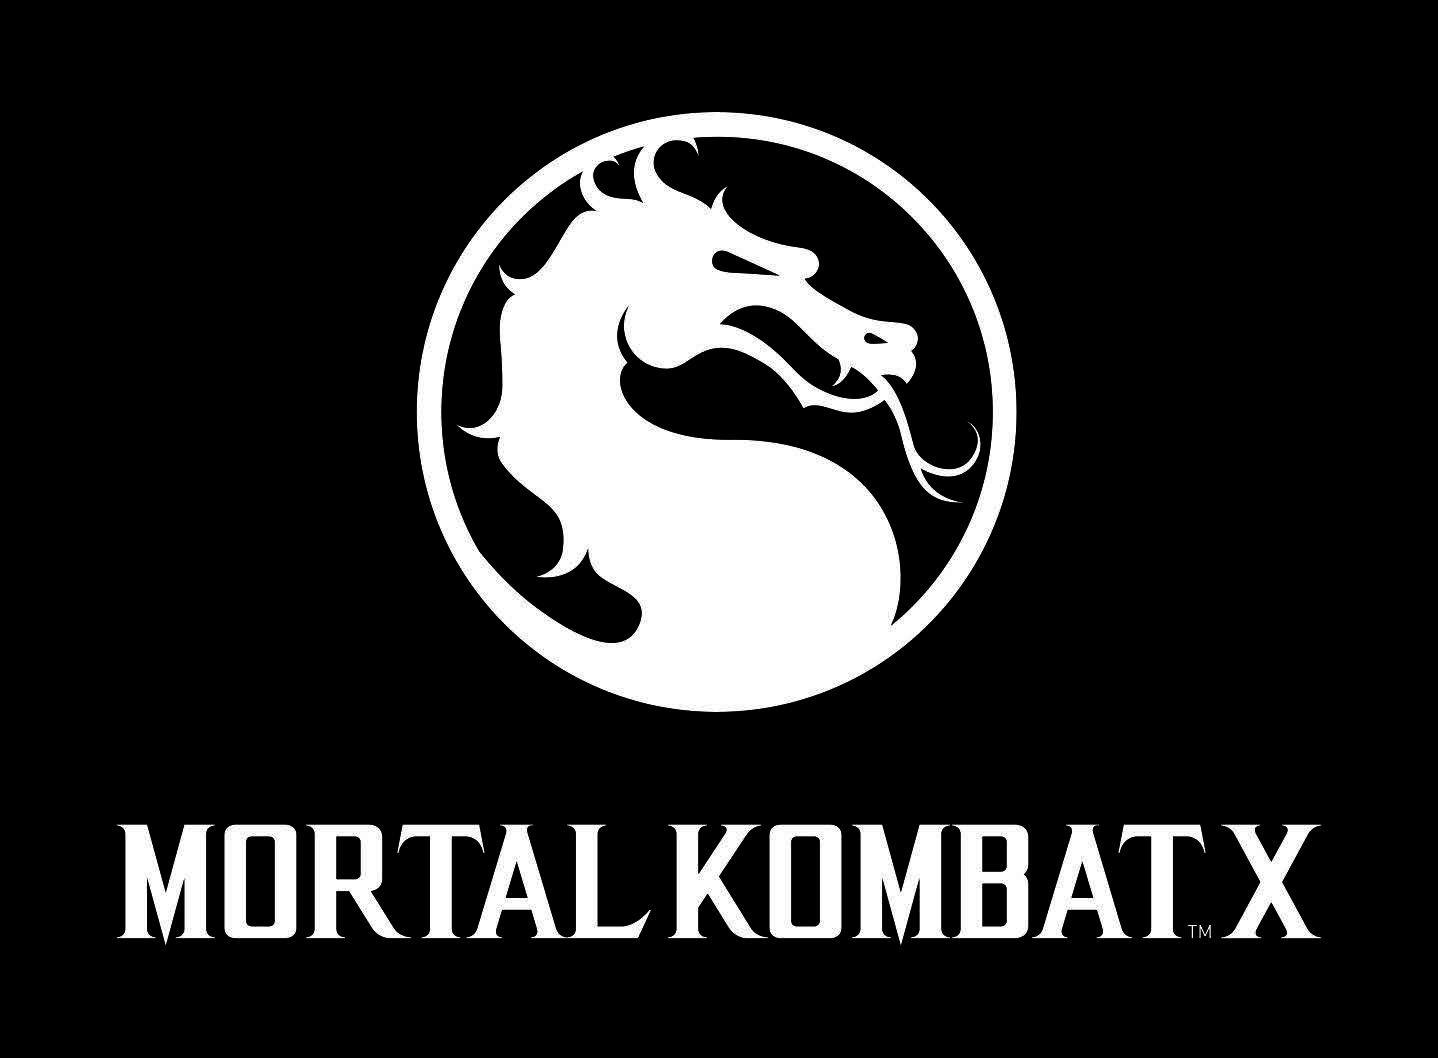 Mortal Kombat Logo - Mortal Kombat images Mortal Kombat X Logo HD fond d'écran and ...